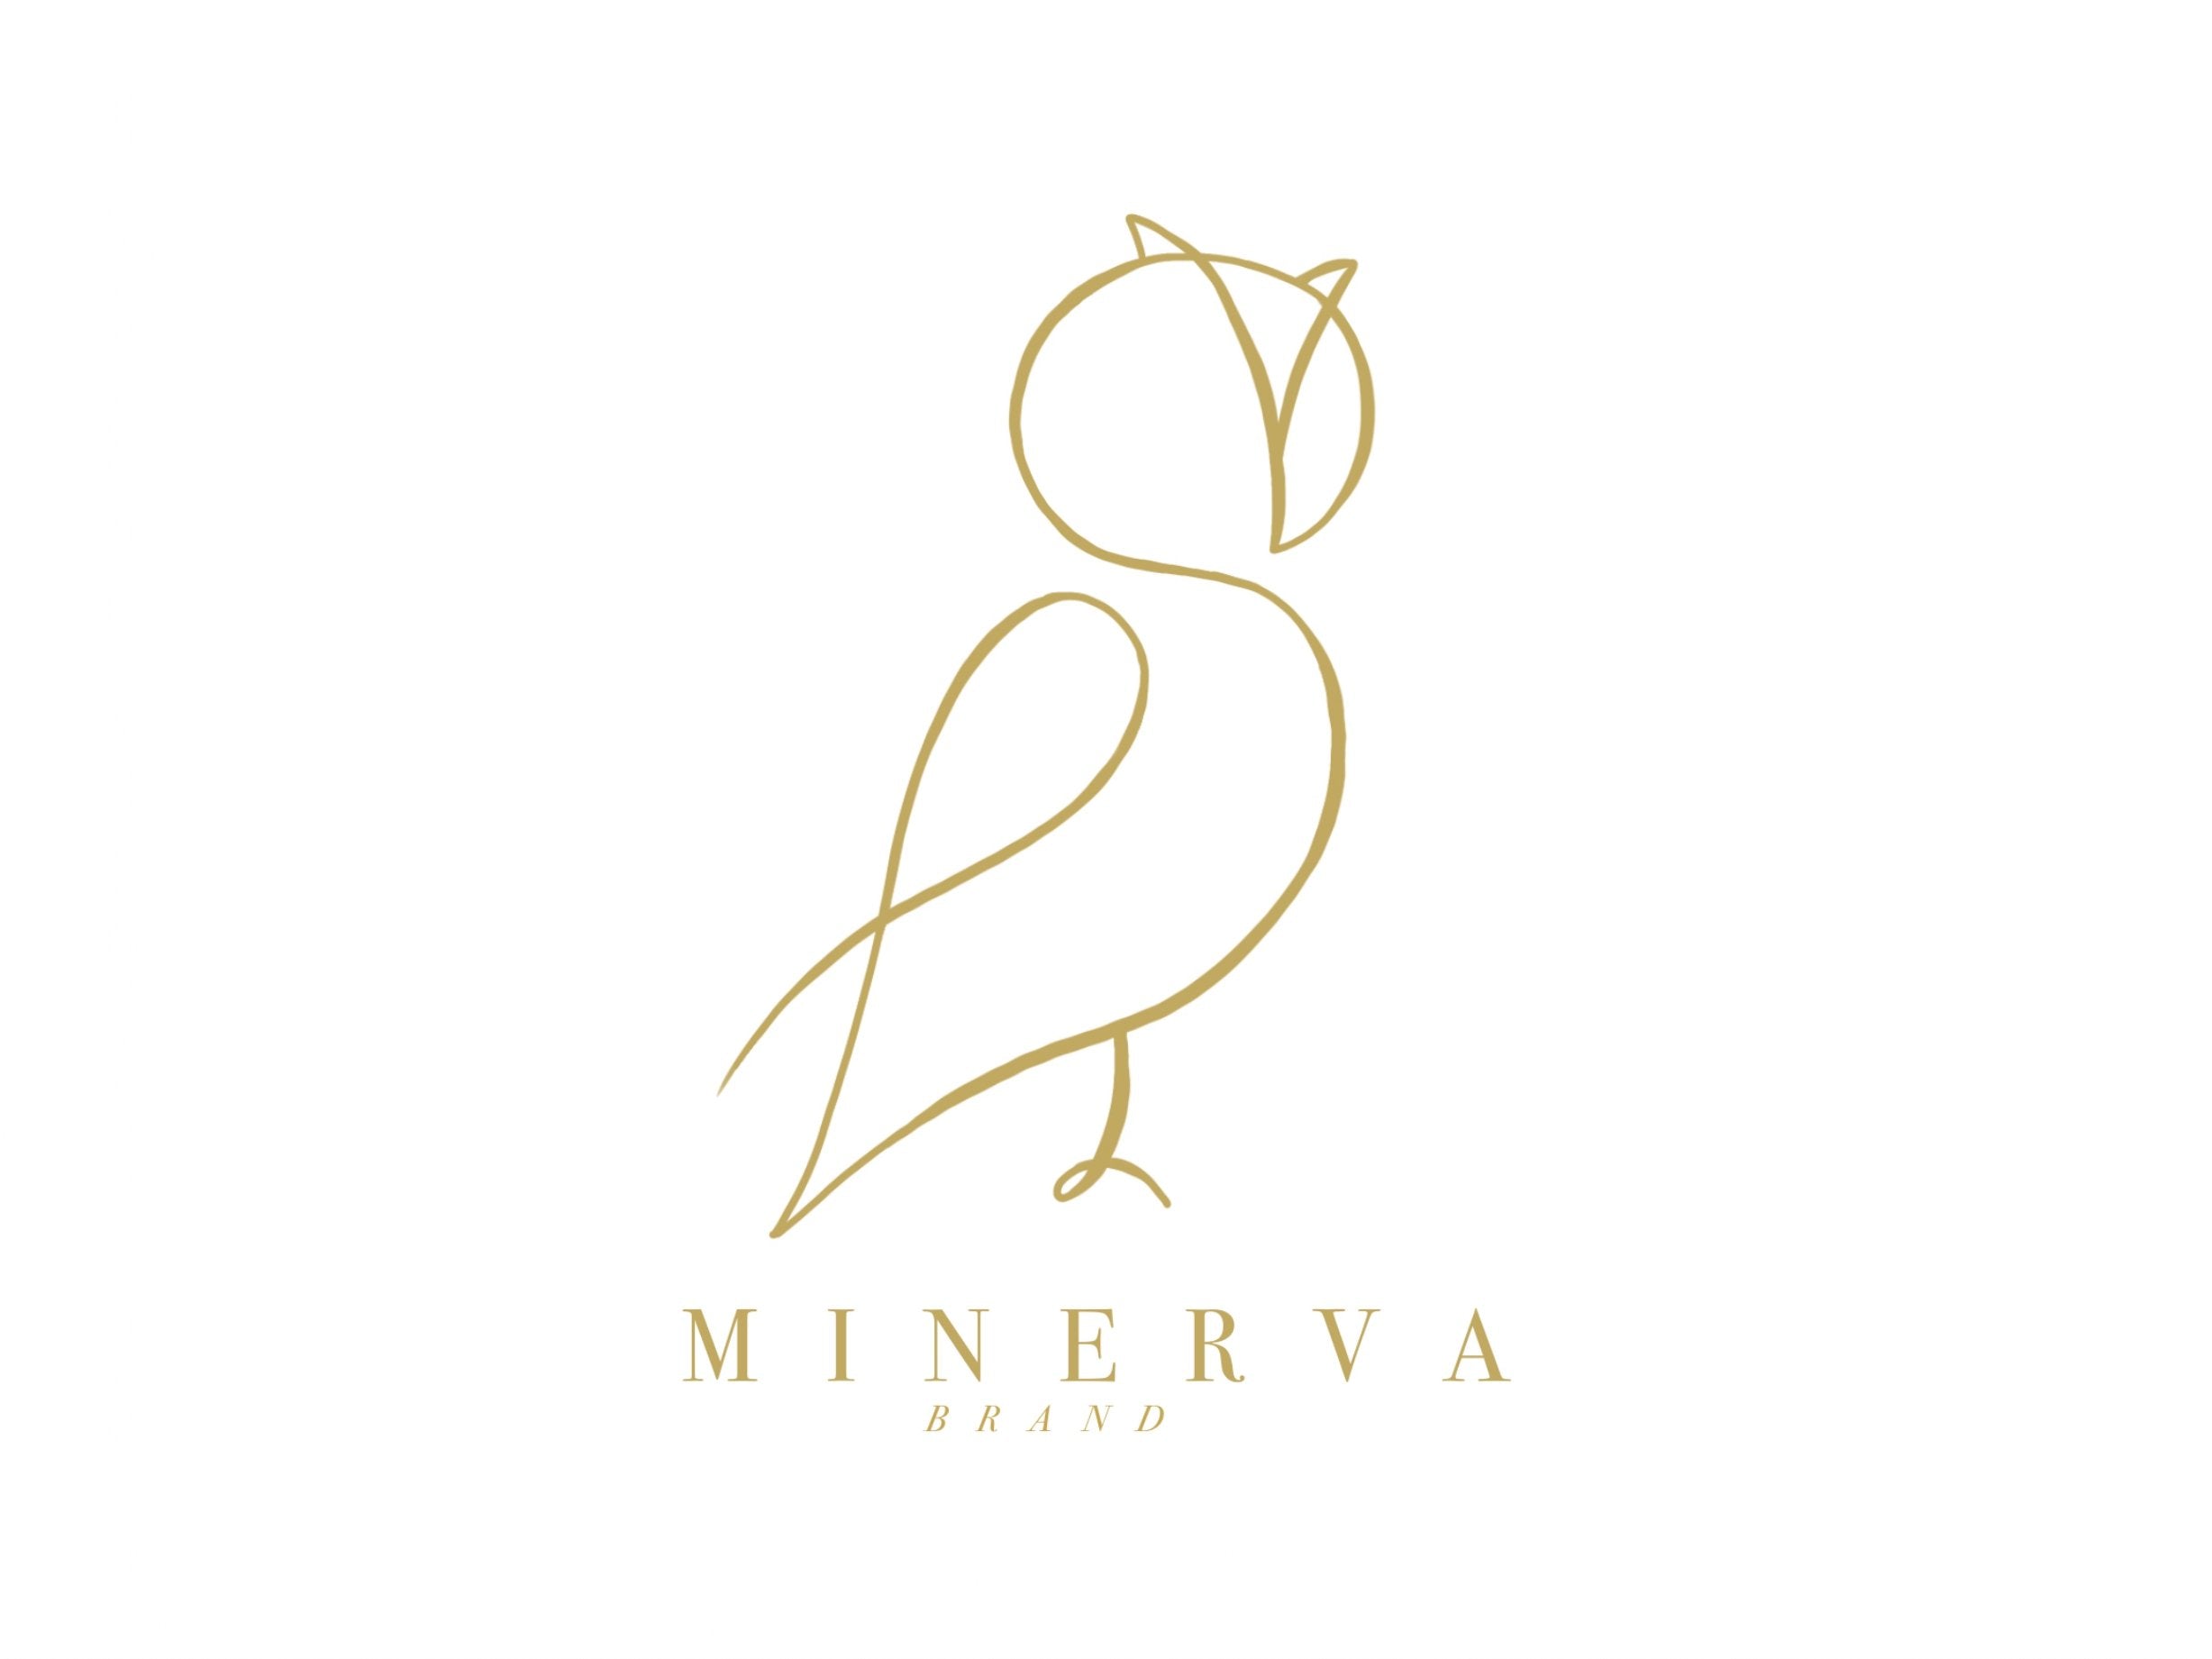 Minerva Brand